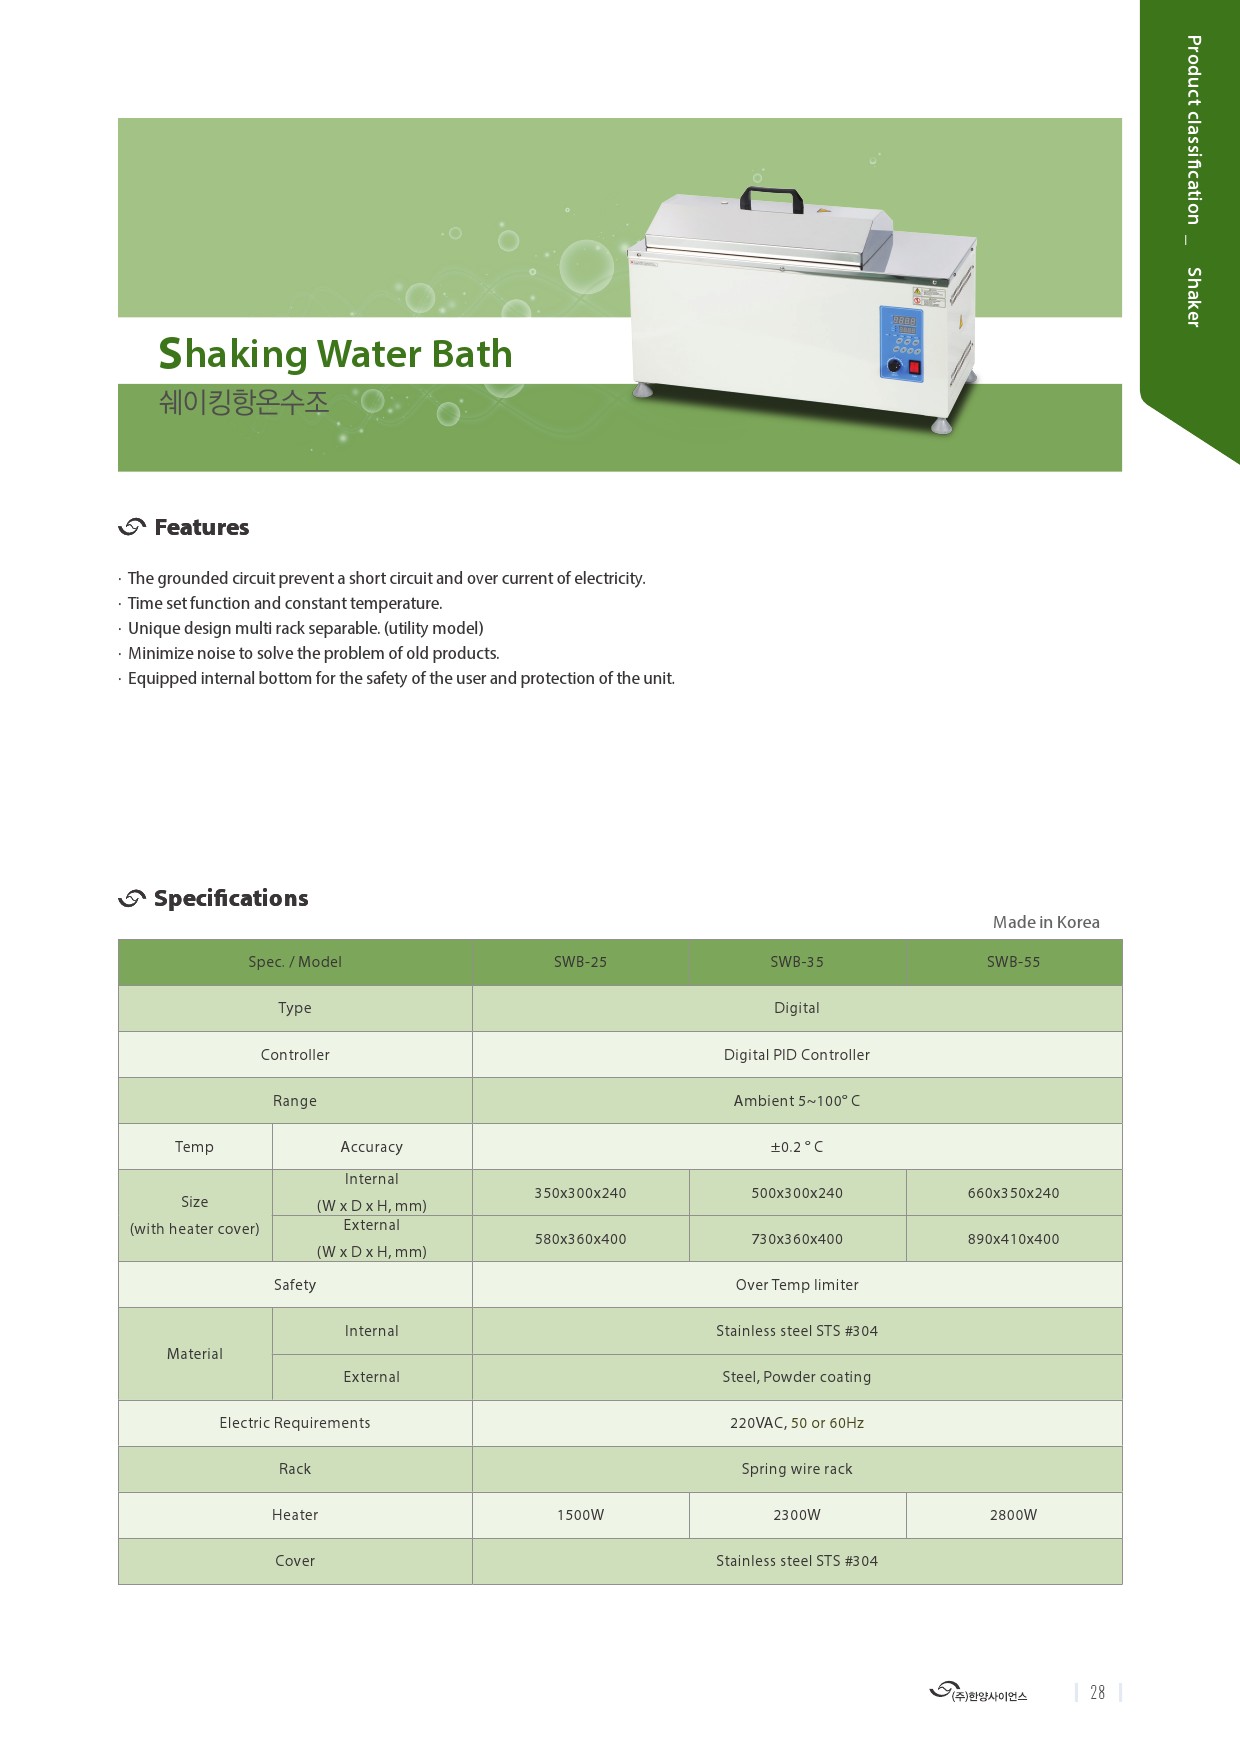 HYSC_Introduction_Shaking Water Bath-1.jpg